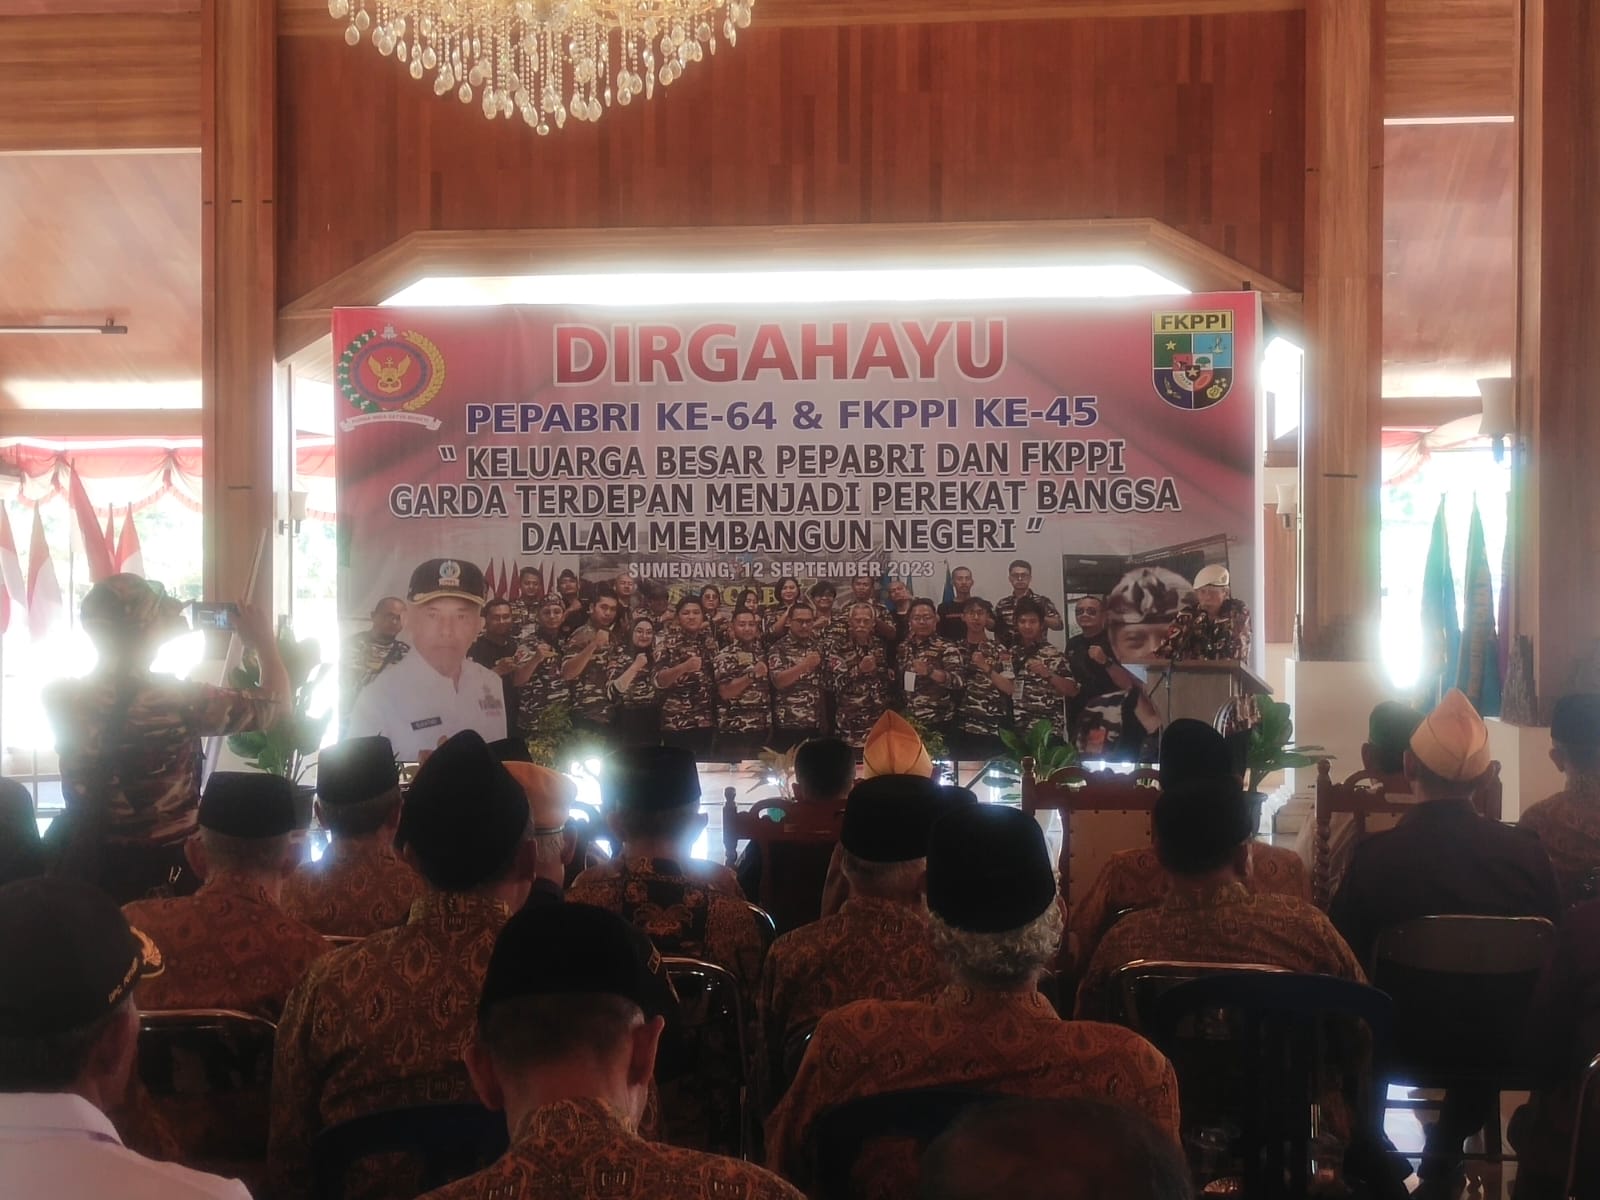 FKPPI dan PEPABRI Berkomitmen Bantu TNI-Polri dalam Menjalankan Tugas